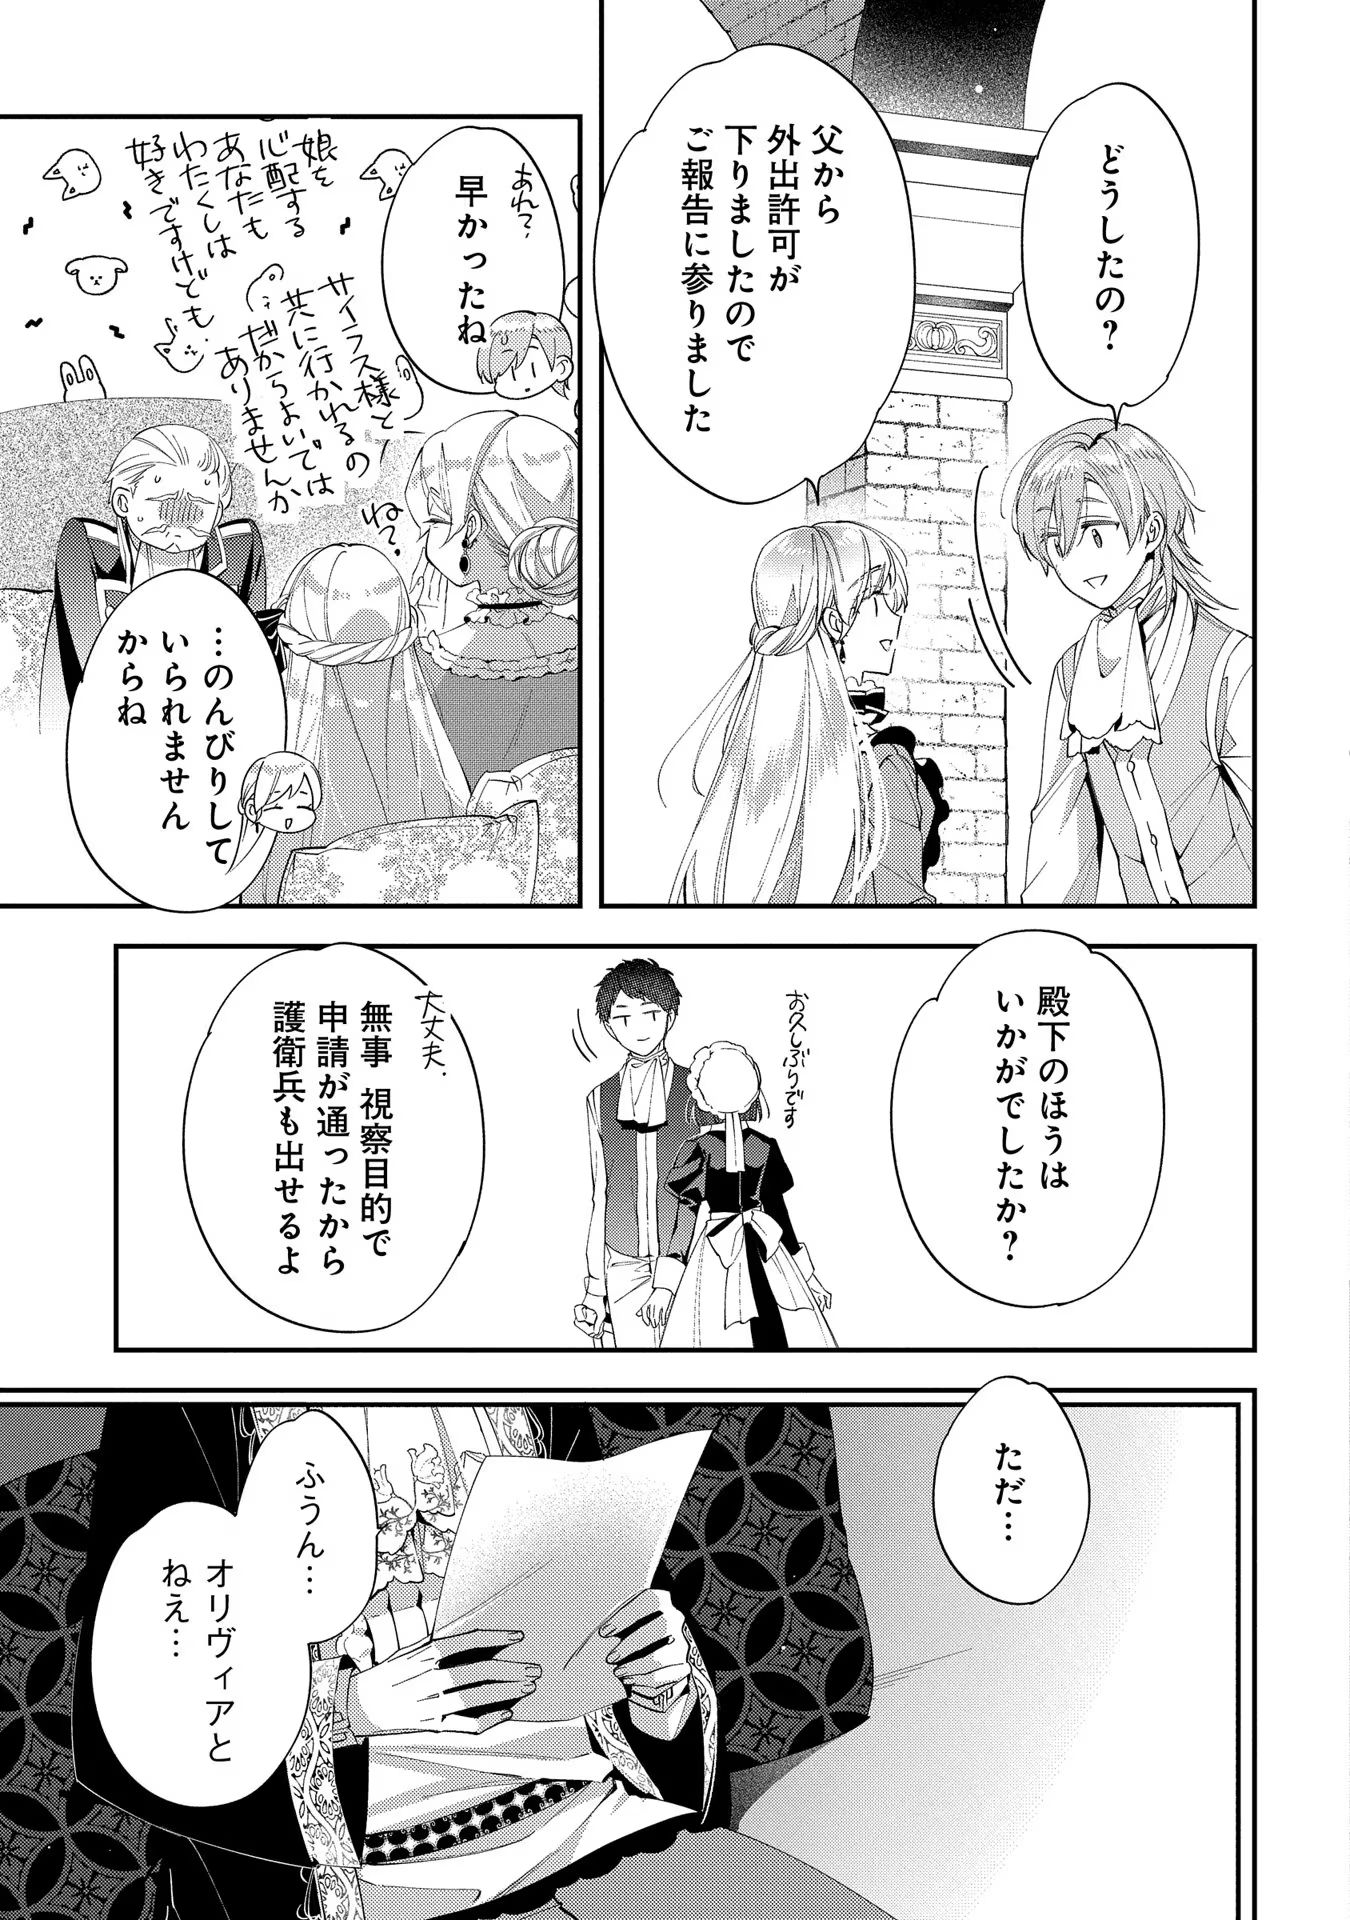 Outaishi ni Konyaku Hakisareta no de, Mou Baka no Furi wa Yameyou to Omoimasu - Chapter 13 - Page 9